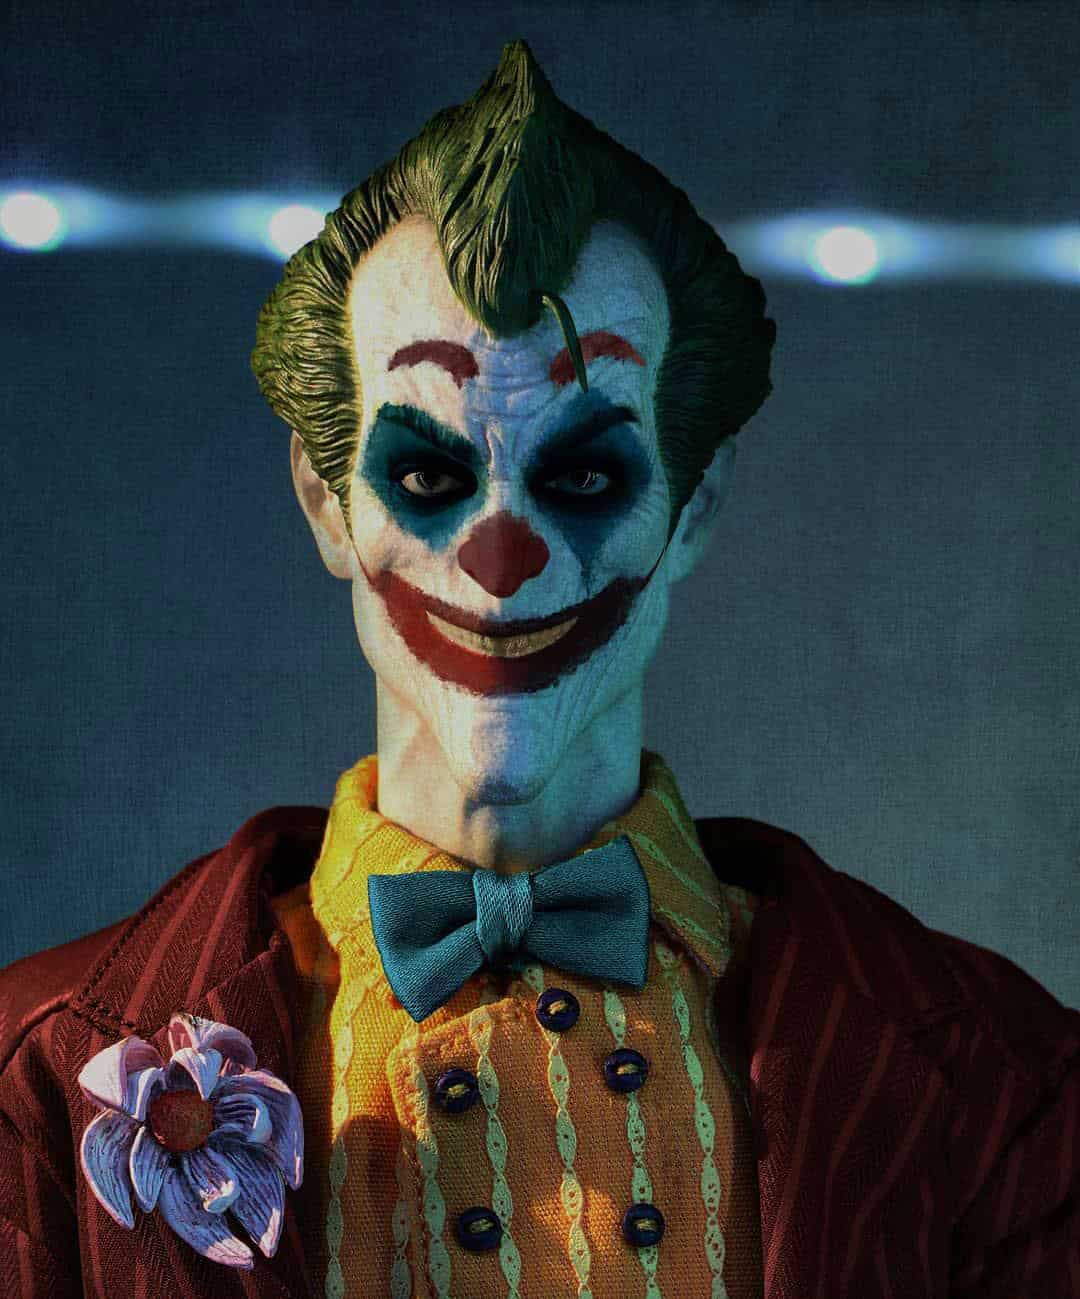 Joker DP for Instagram